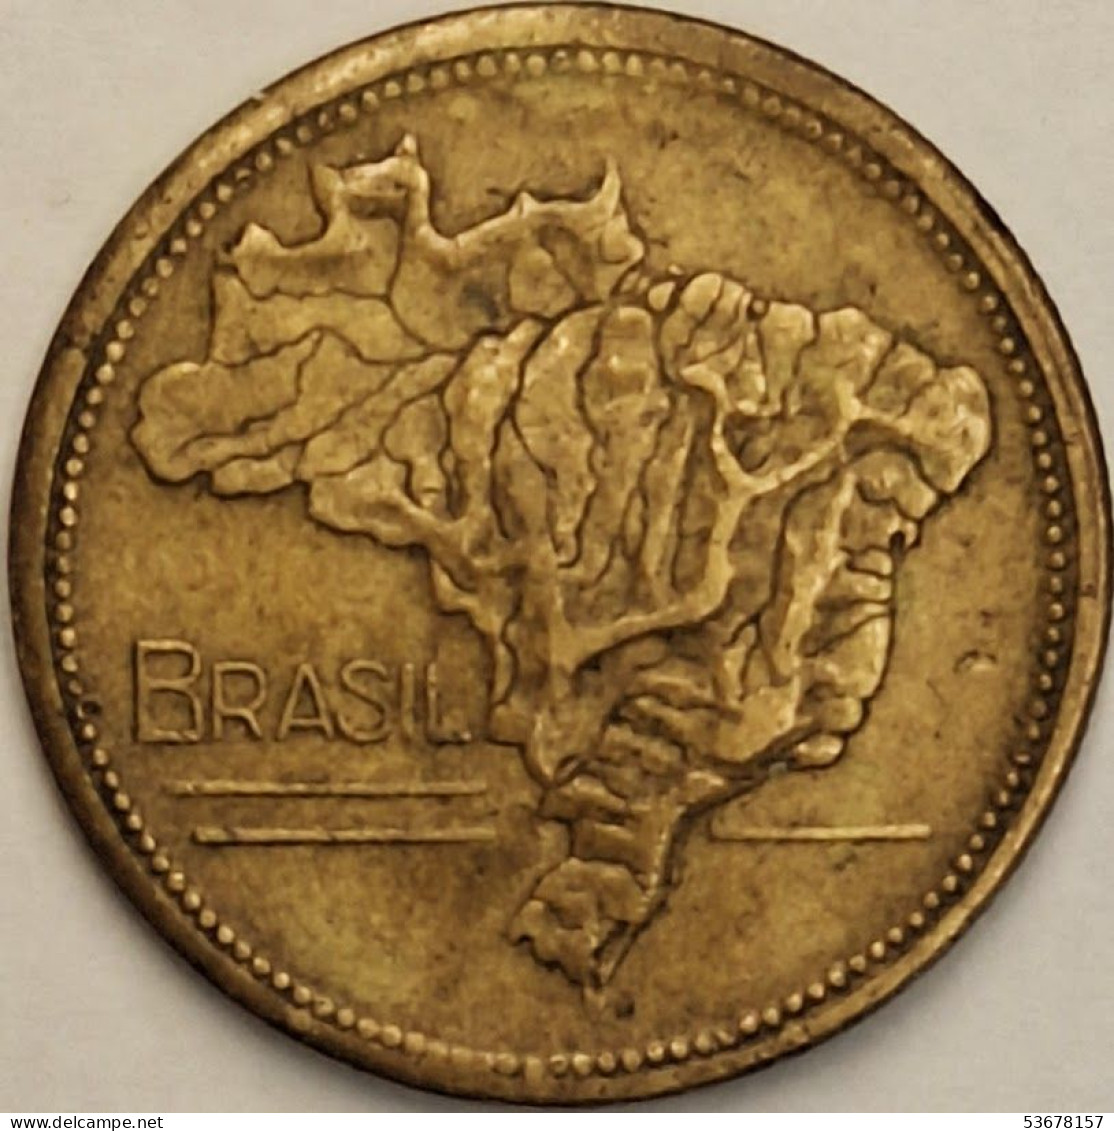 Brazil - 2 Cruzeiros 1953, KM# 559 (#3254) - Brésil